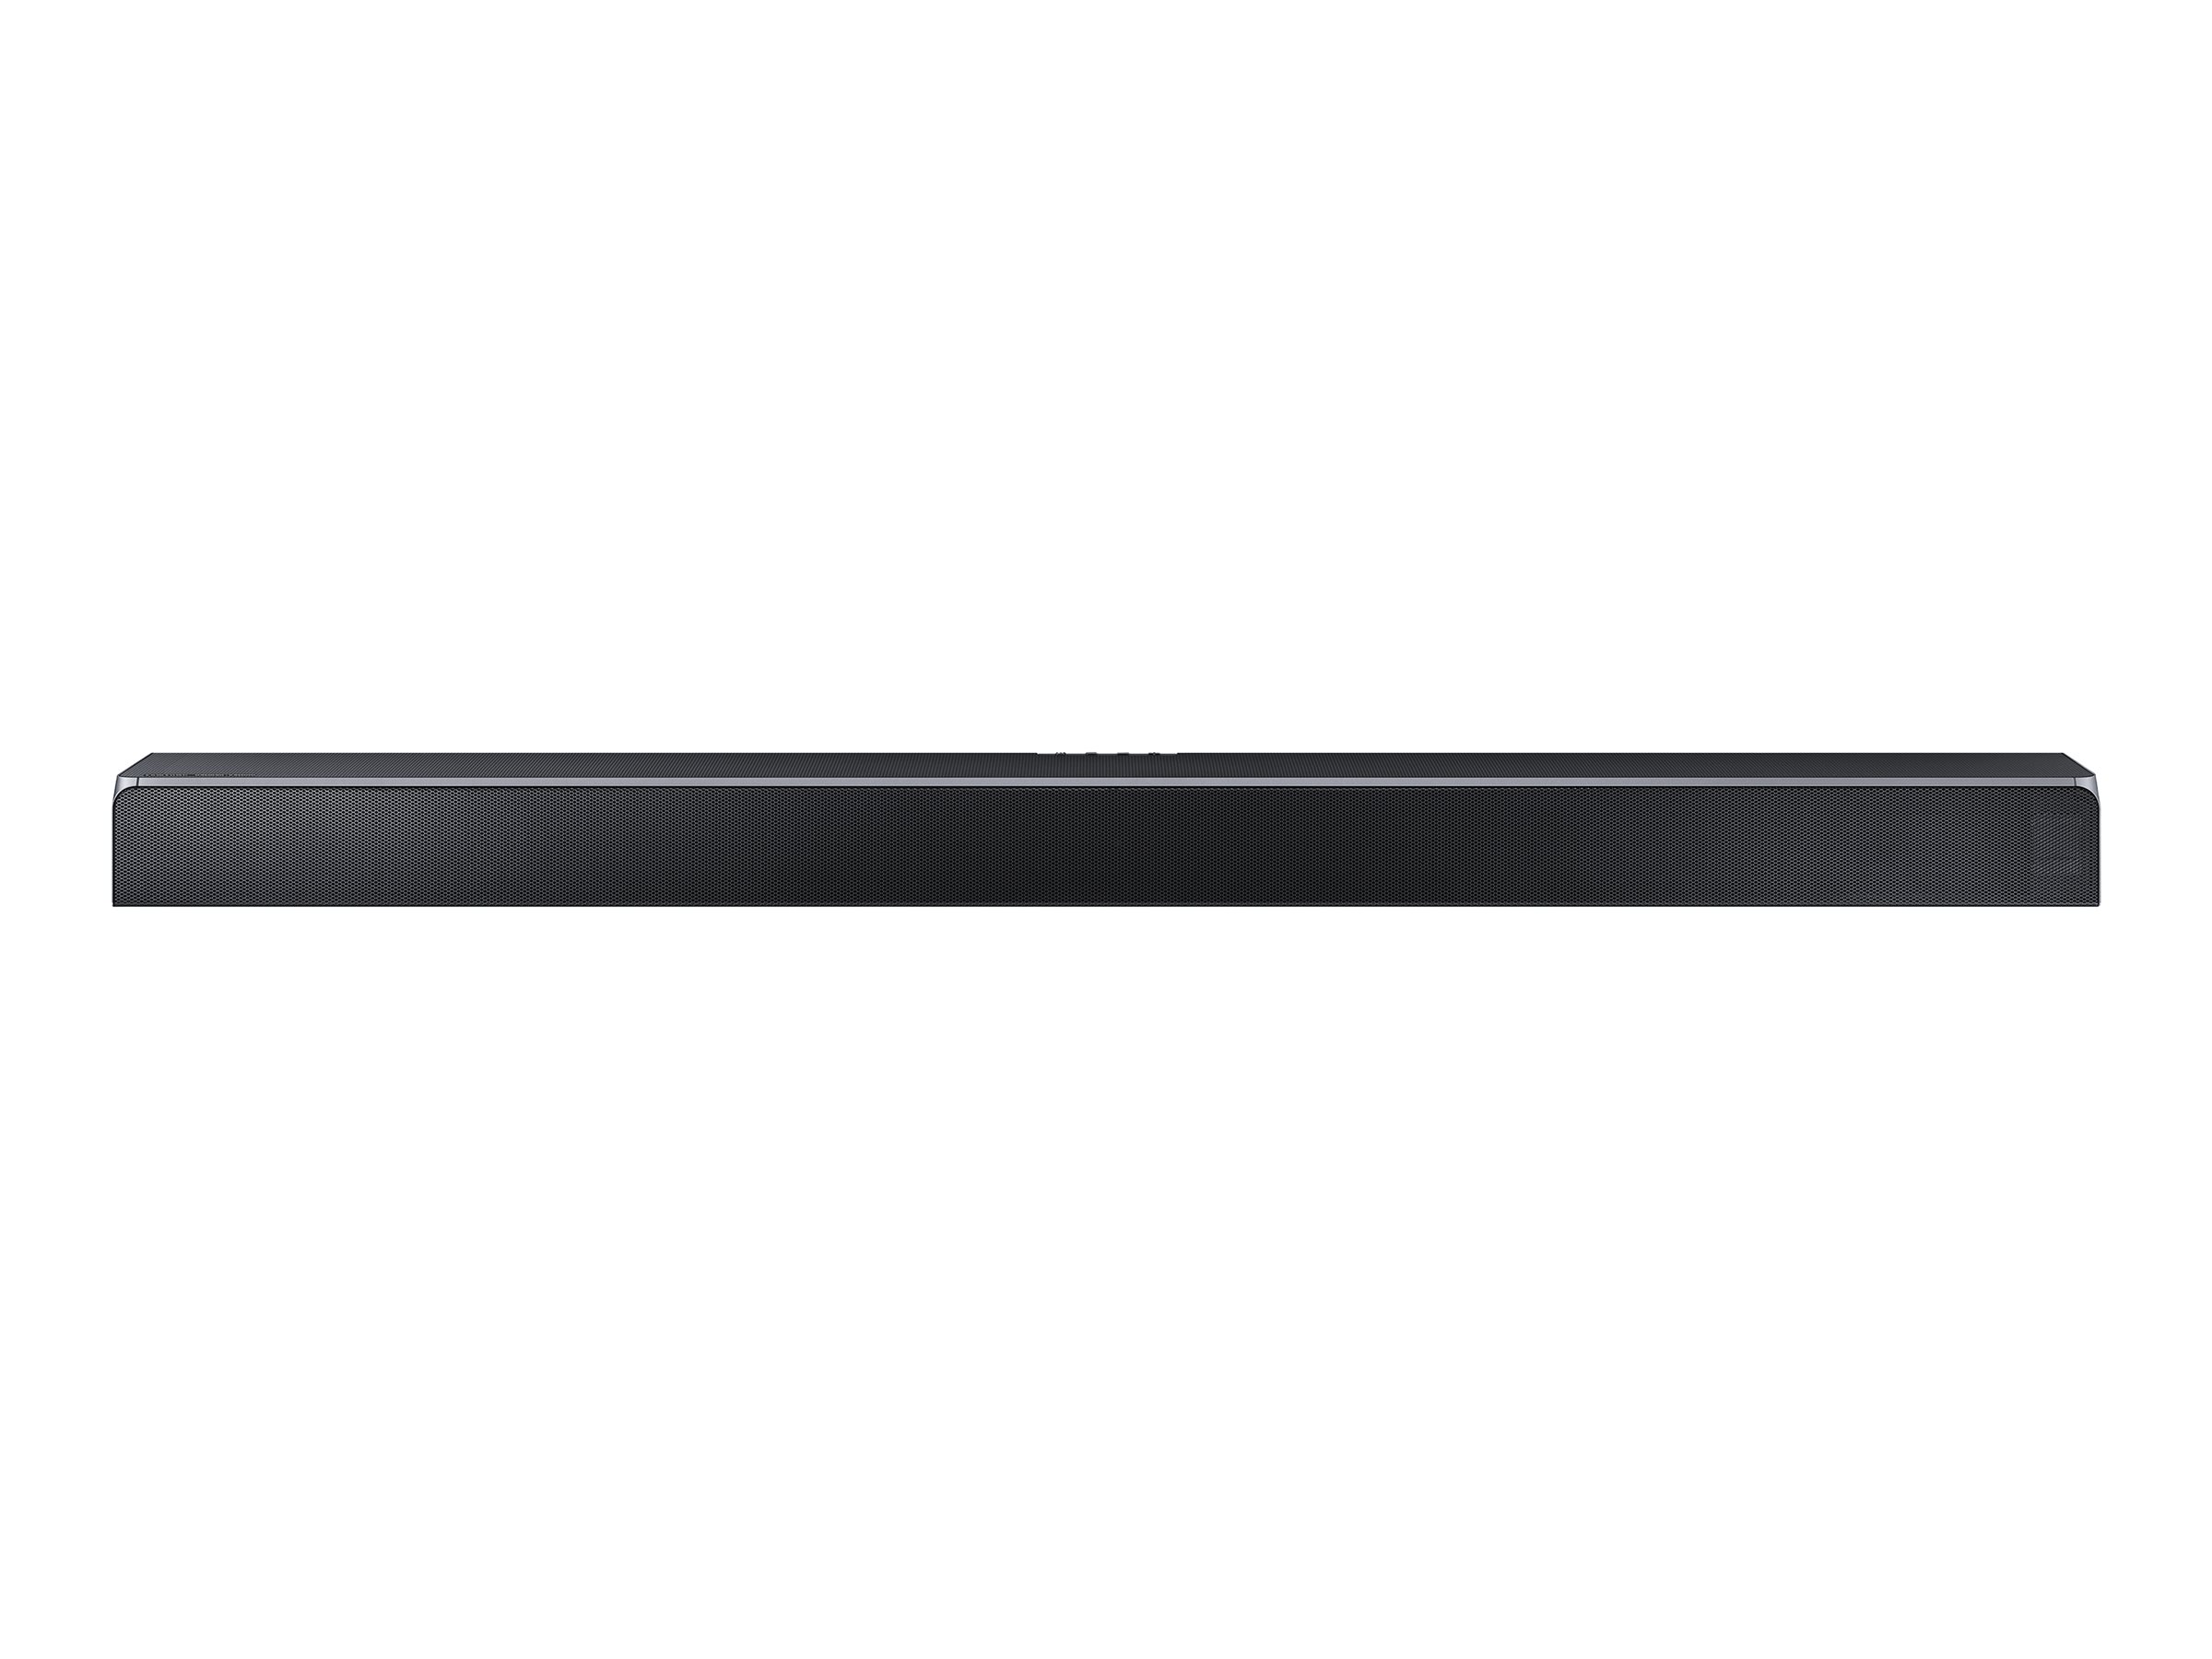 Samsung HW-Q90R - Sound bar system